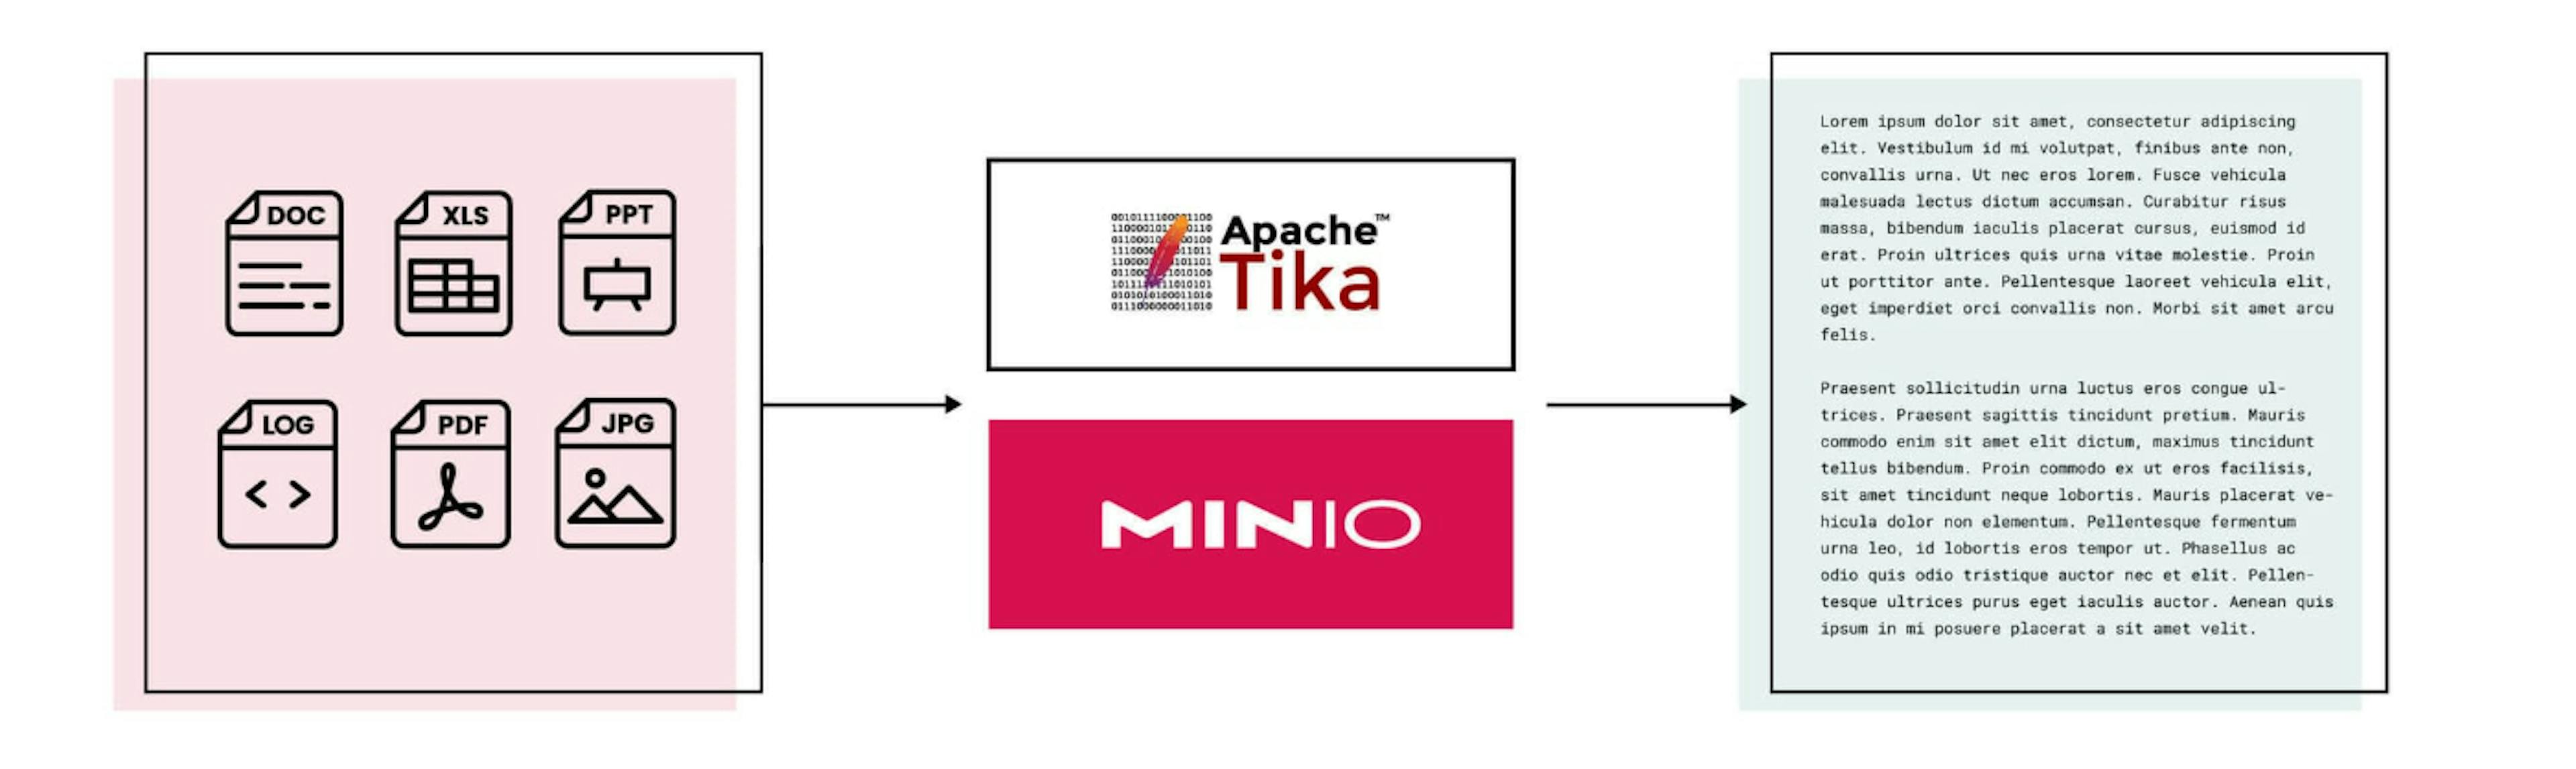 featured image - Aproveitando MinIO e Apache Tika para extração e análise automatizada de texto